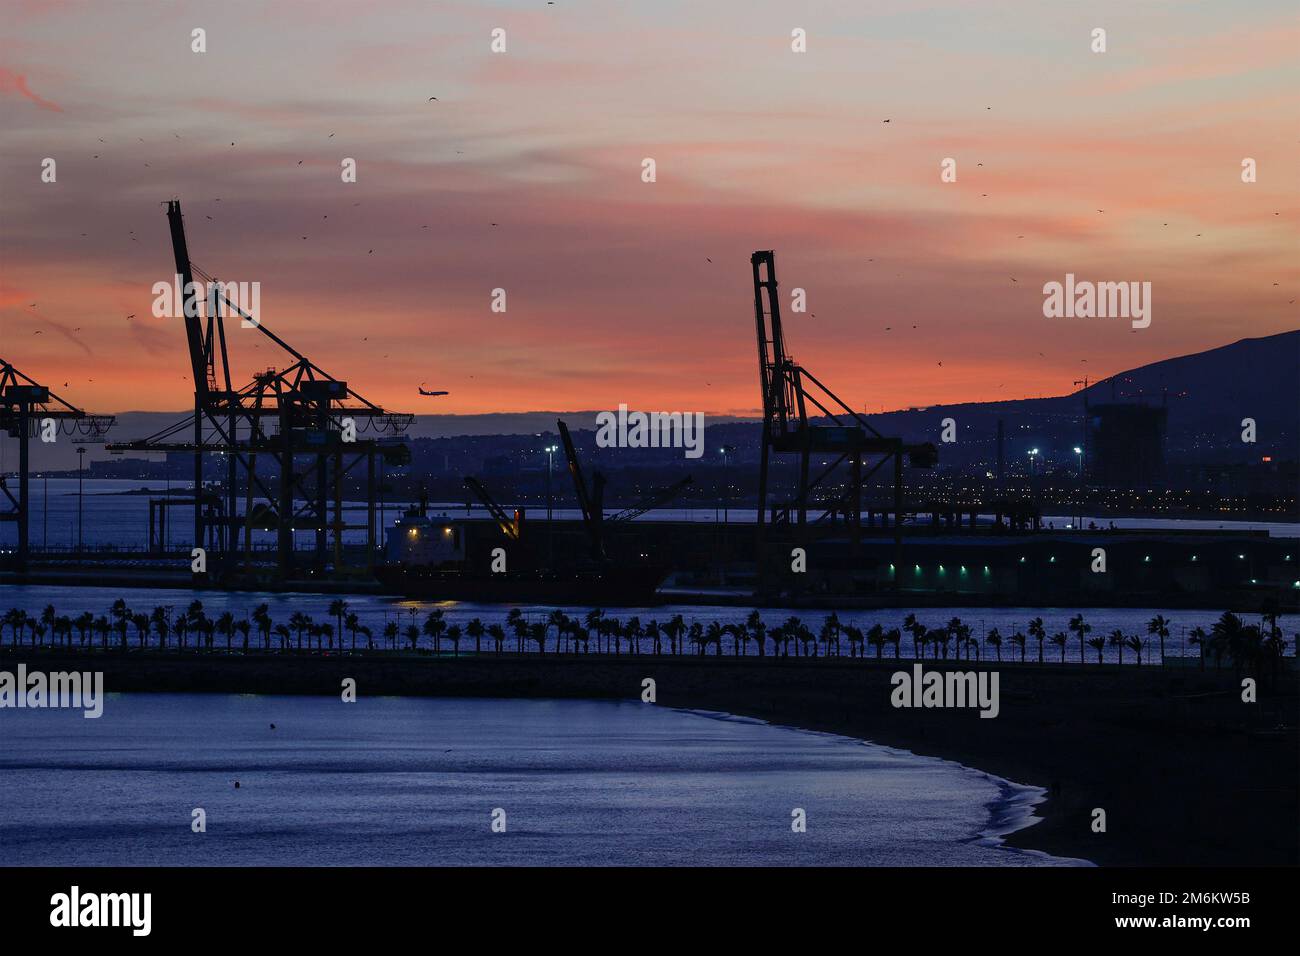 Vue sur le coucher du soleil avec silhouette de grues industrielles dans le port de Malaga, Andalousie, Espagne. Banque D'Images